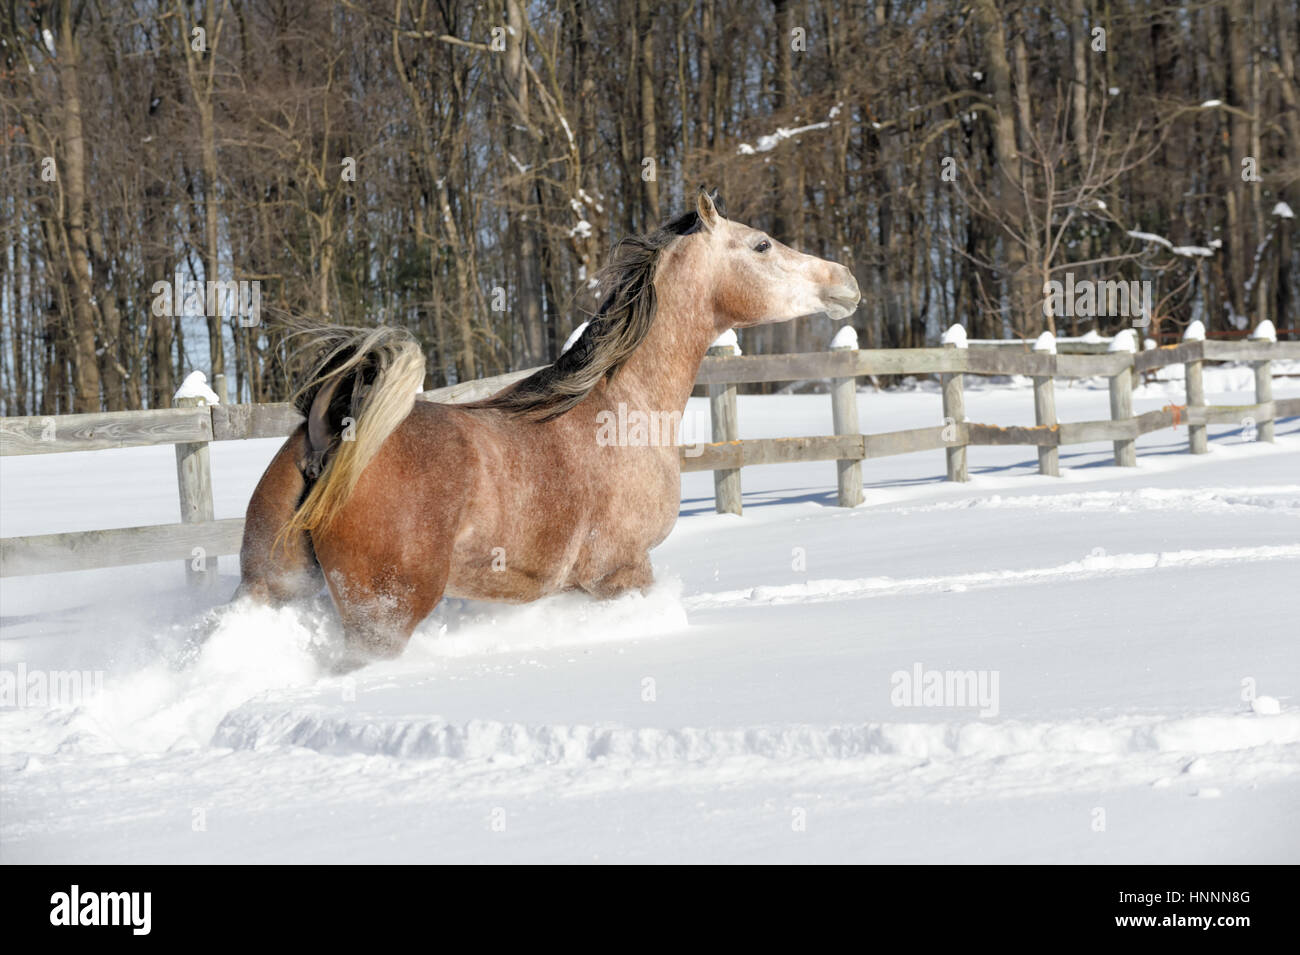 Caballo corriendo en nieve profunda mientras toma una curva cerrada en la valla, una hermosa yegua árabe en invierno, Pennsylvania, PA, USA. Foto de stock